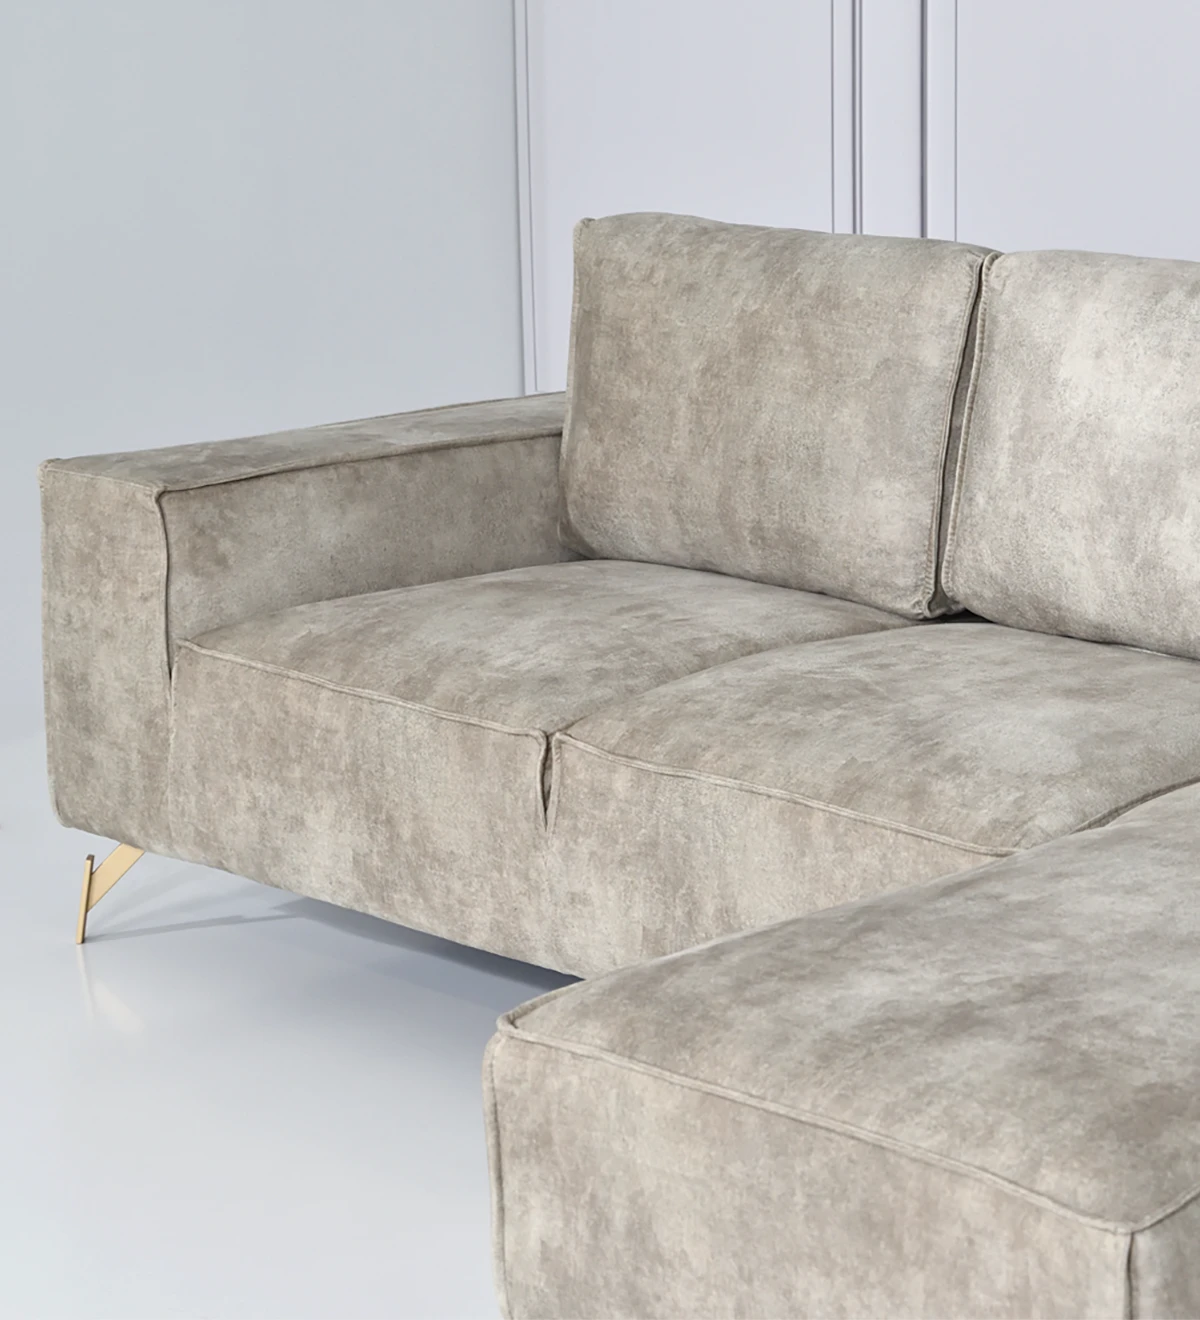 Sofá de 2 lugares com chaise longue, estofado a tecido, com pés metálicos lacados a dourado